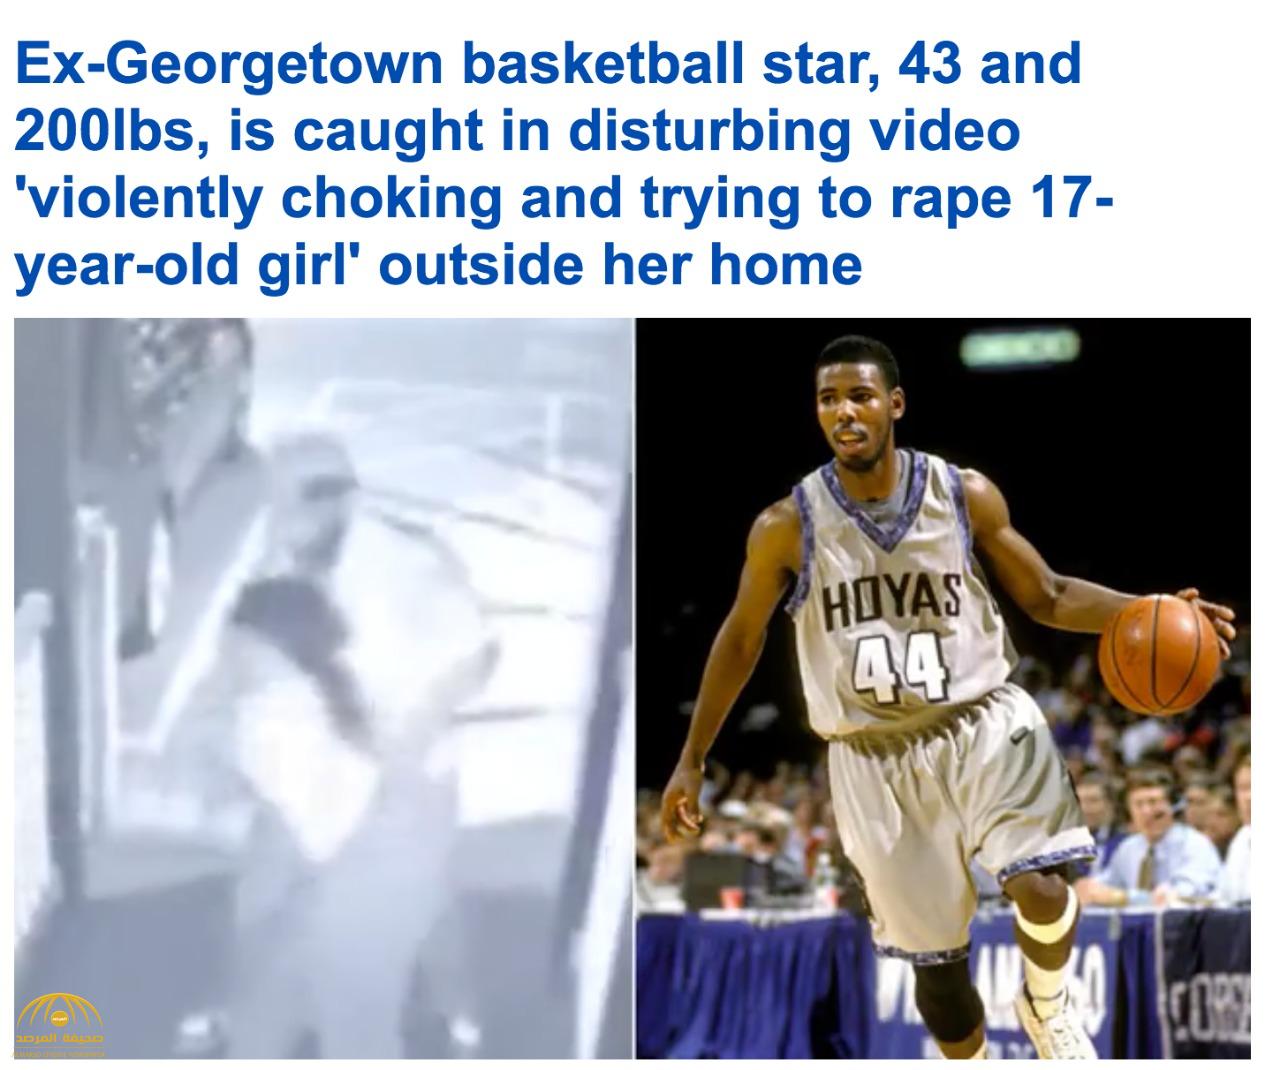 شاهد: لاعب كرة سلة أمريكي شهير يعتدي على  فتاة  ويحاول اغتصابها بالقوة في شارع عام بولاية ميريلاند